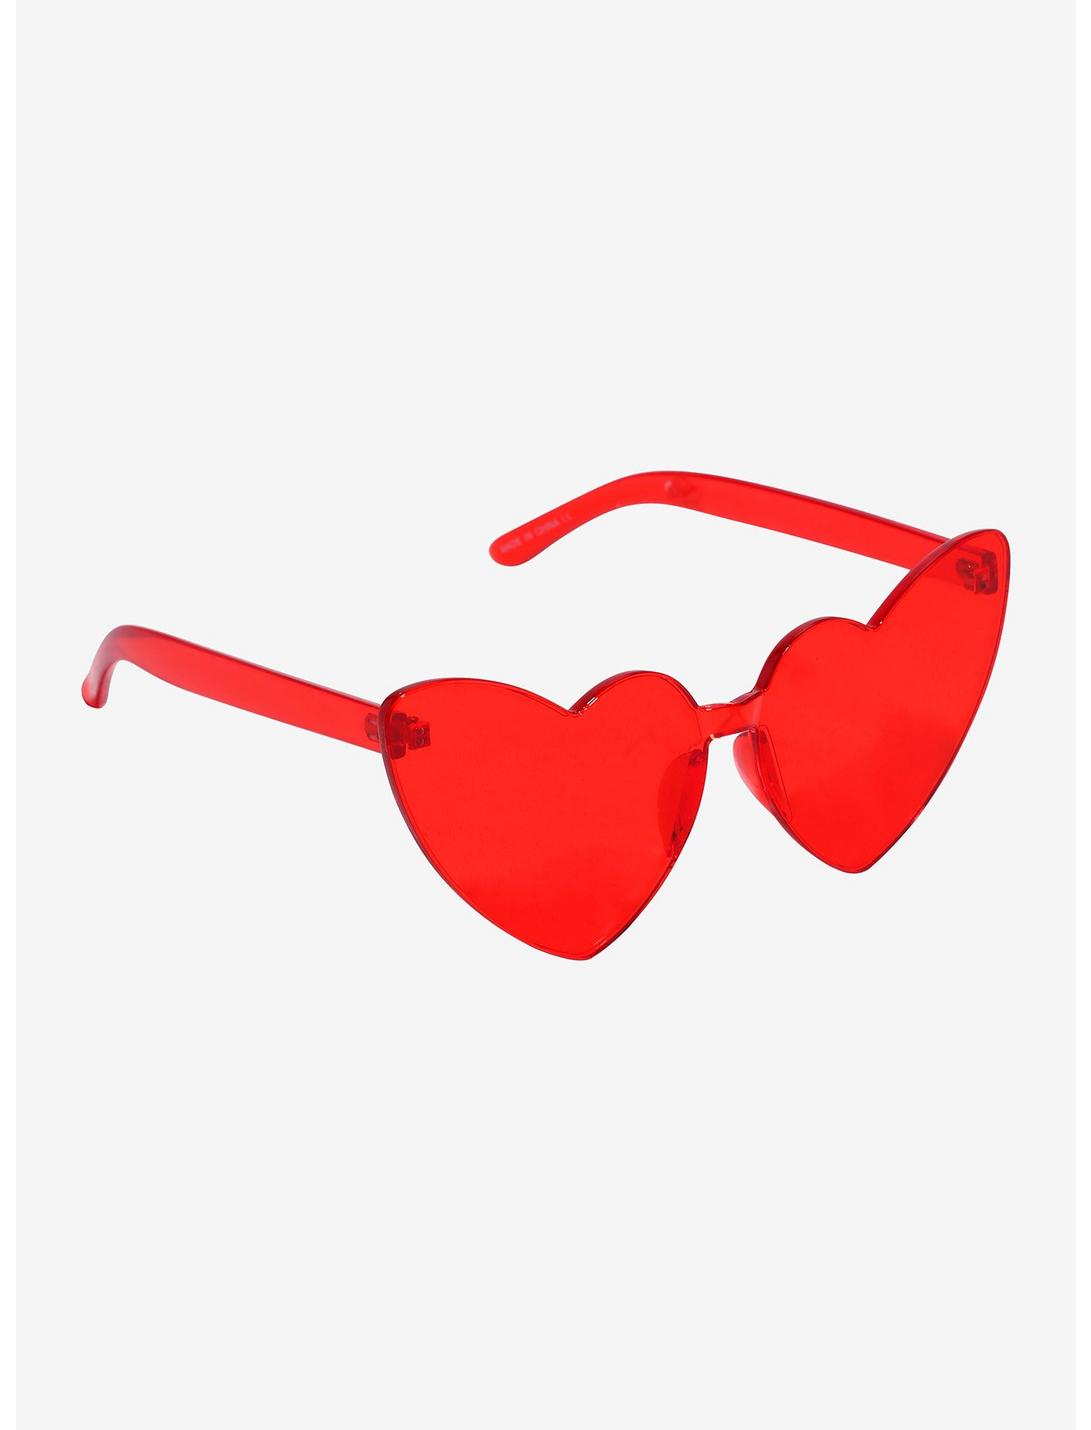 Red Heart Sunglasses, , hi-res